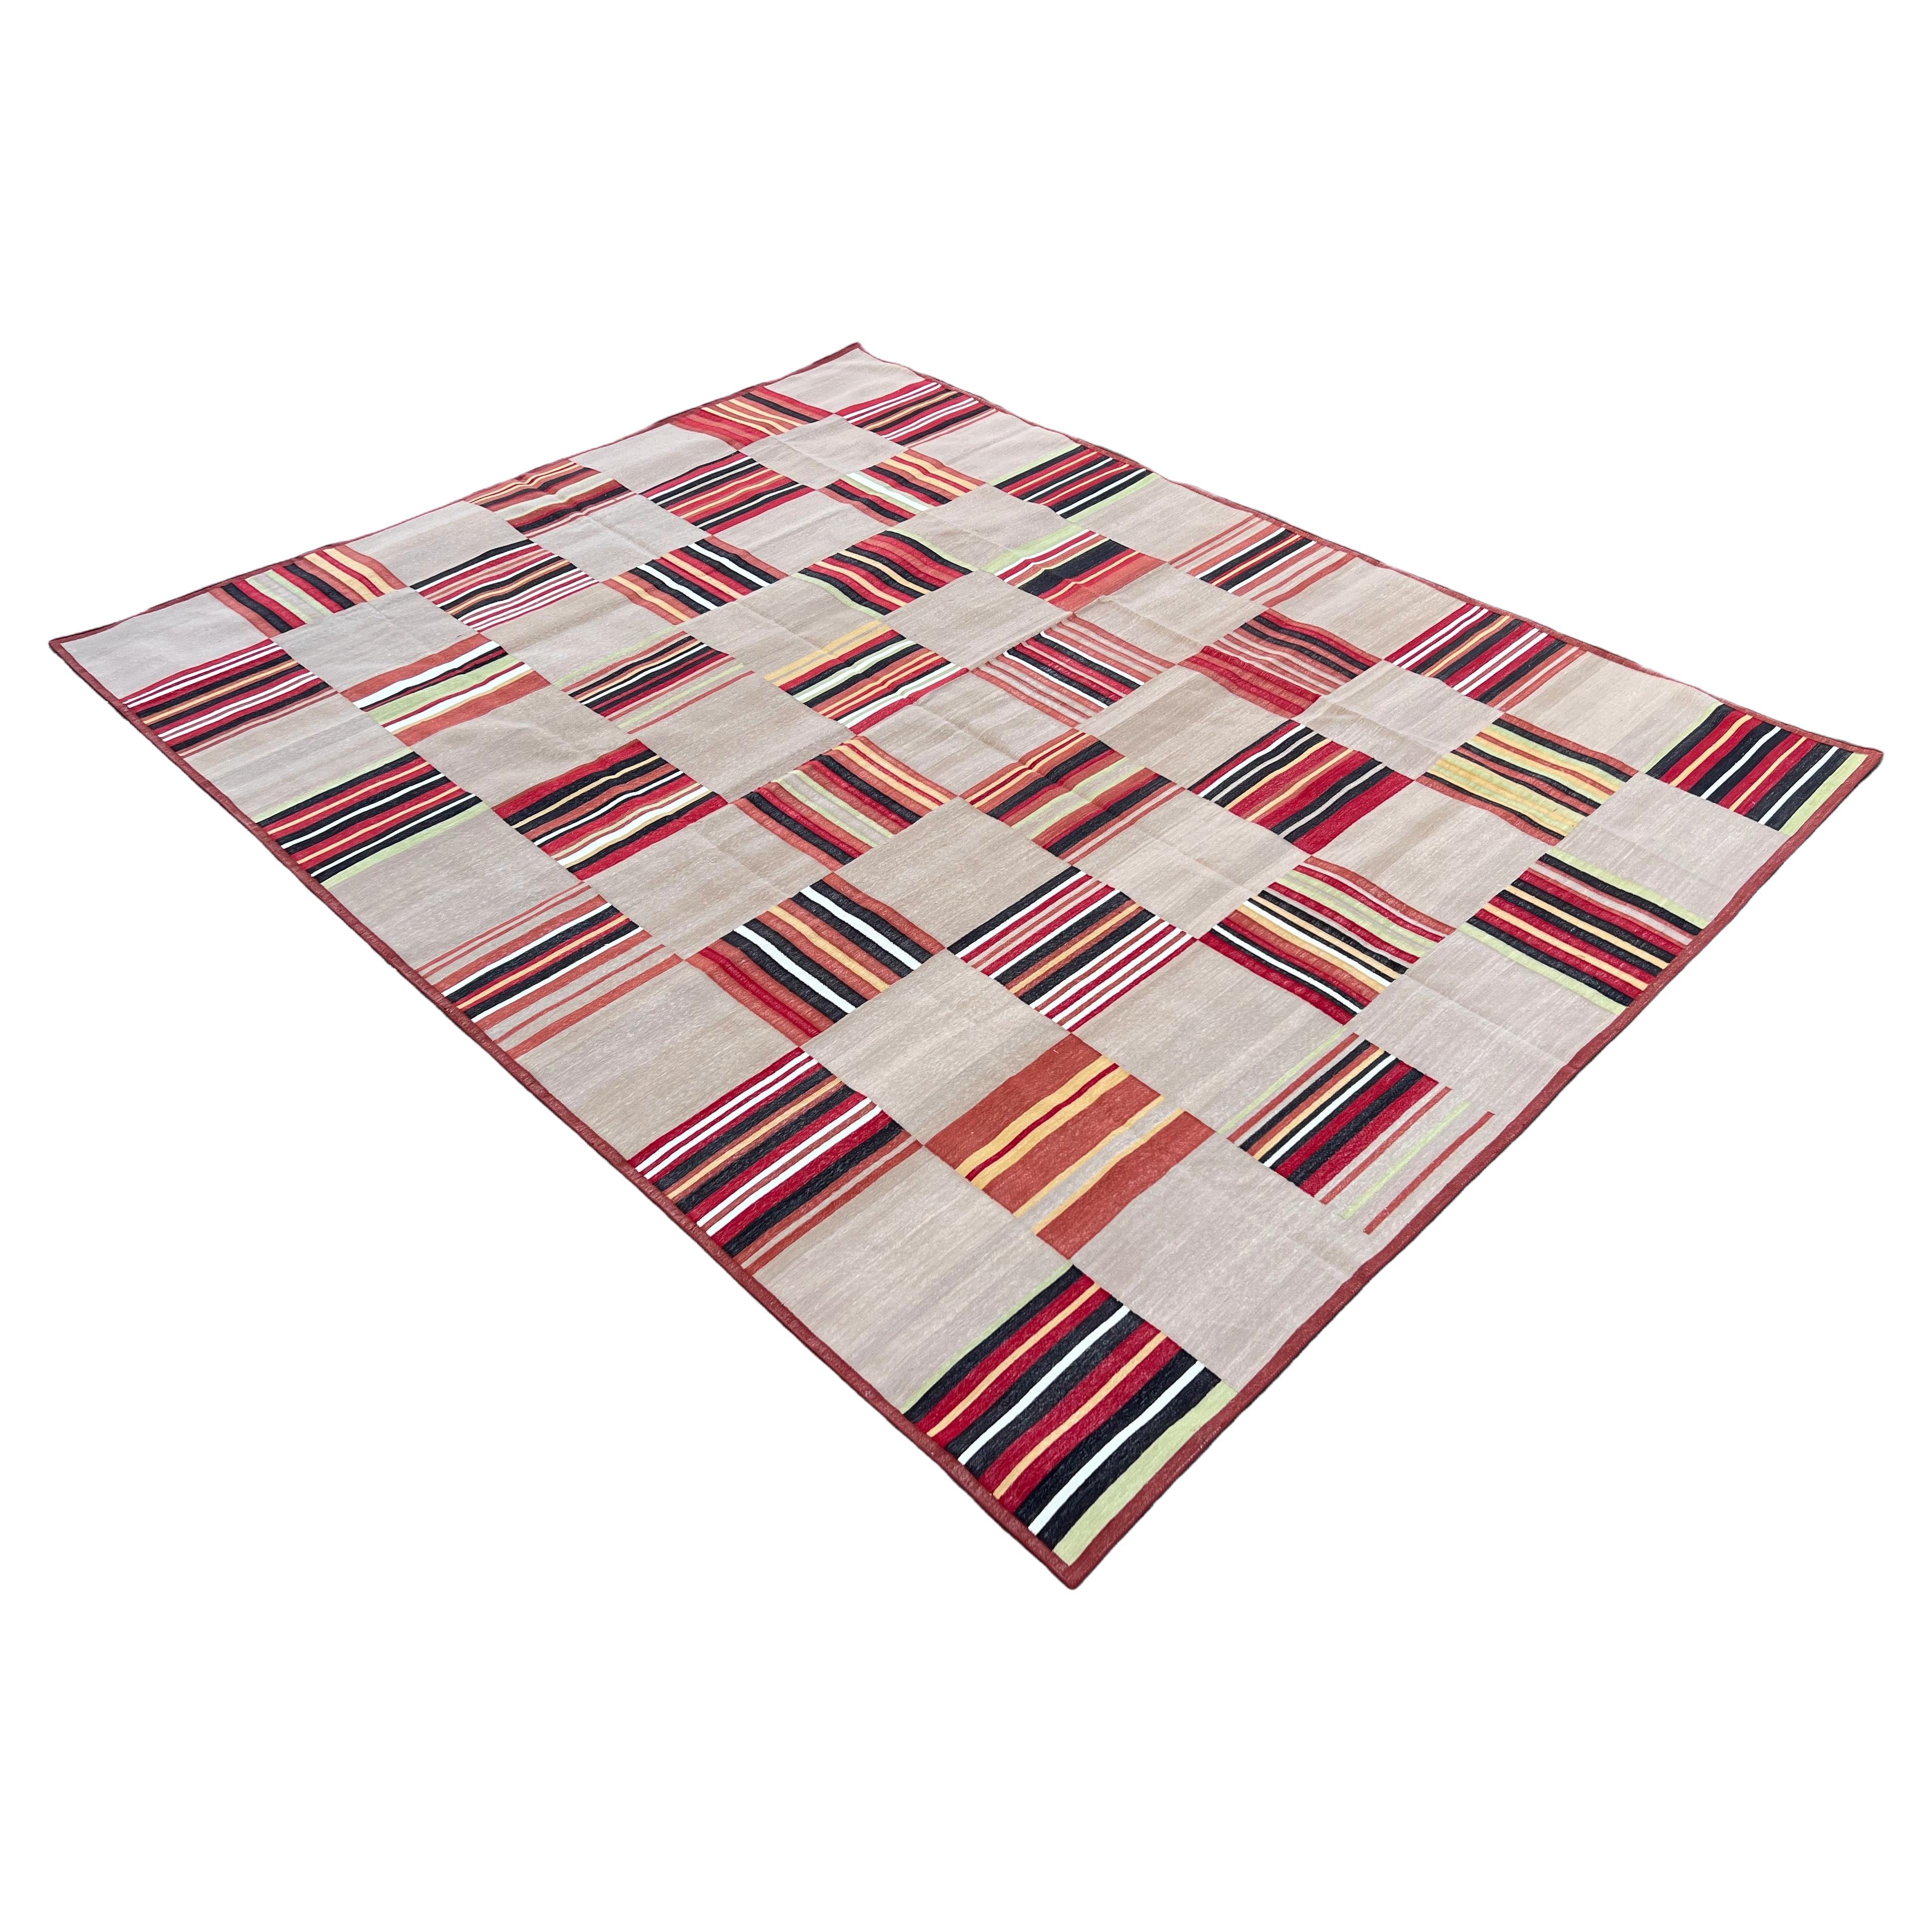 Pflanzlich gefärbter Teppich aus Baumwolle, Beige & Terrakotta Rot Fliese gemustert Indischer Dhurrie-9'x12'
Diese speziellen flachgewebten Dhurries werden aus 15-fachem Garn aus 100% Baumwolle handgewebt. Aufgrund der speziellen